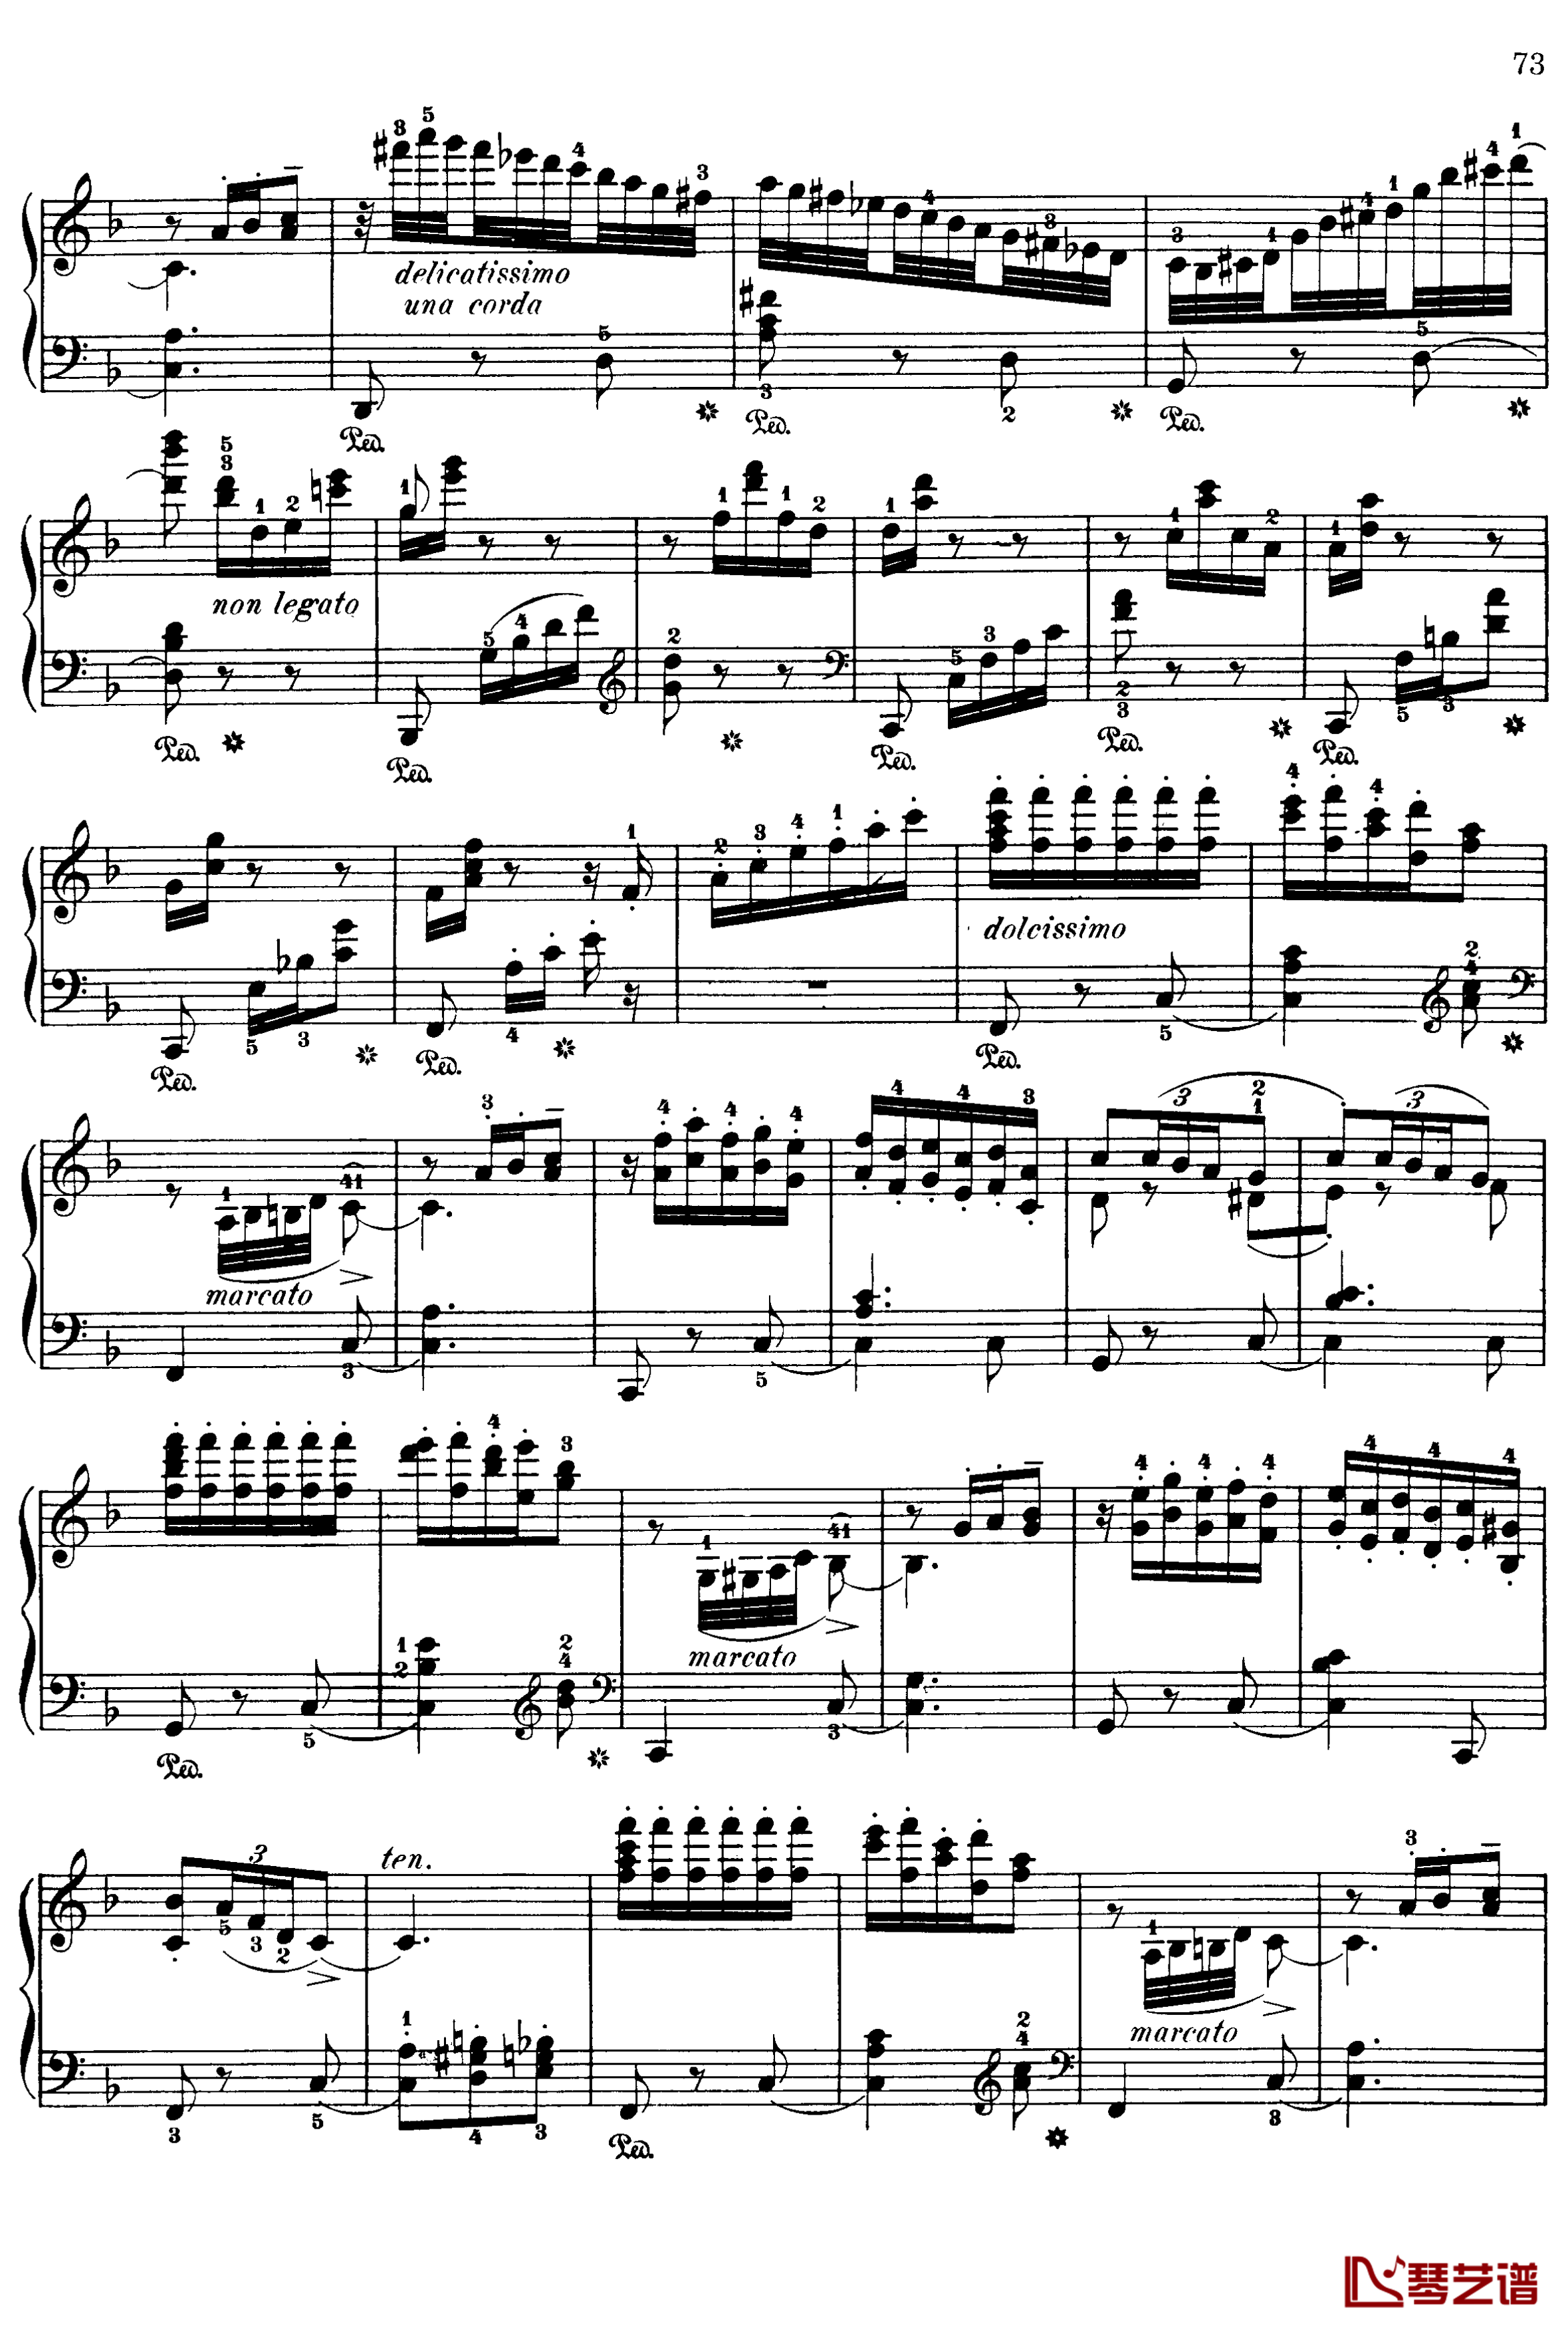 西班牙随想曲 Op.37钢琴谱-莫什科夫斯基-Moszkowski8